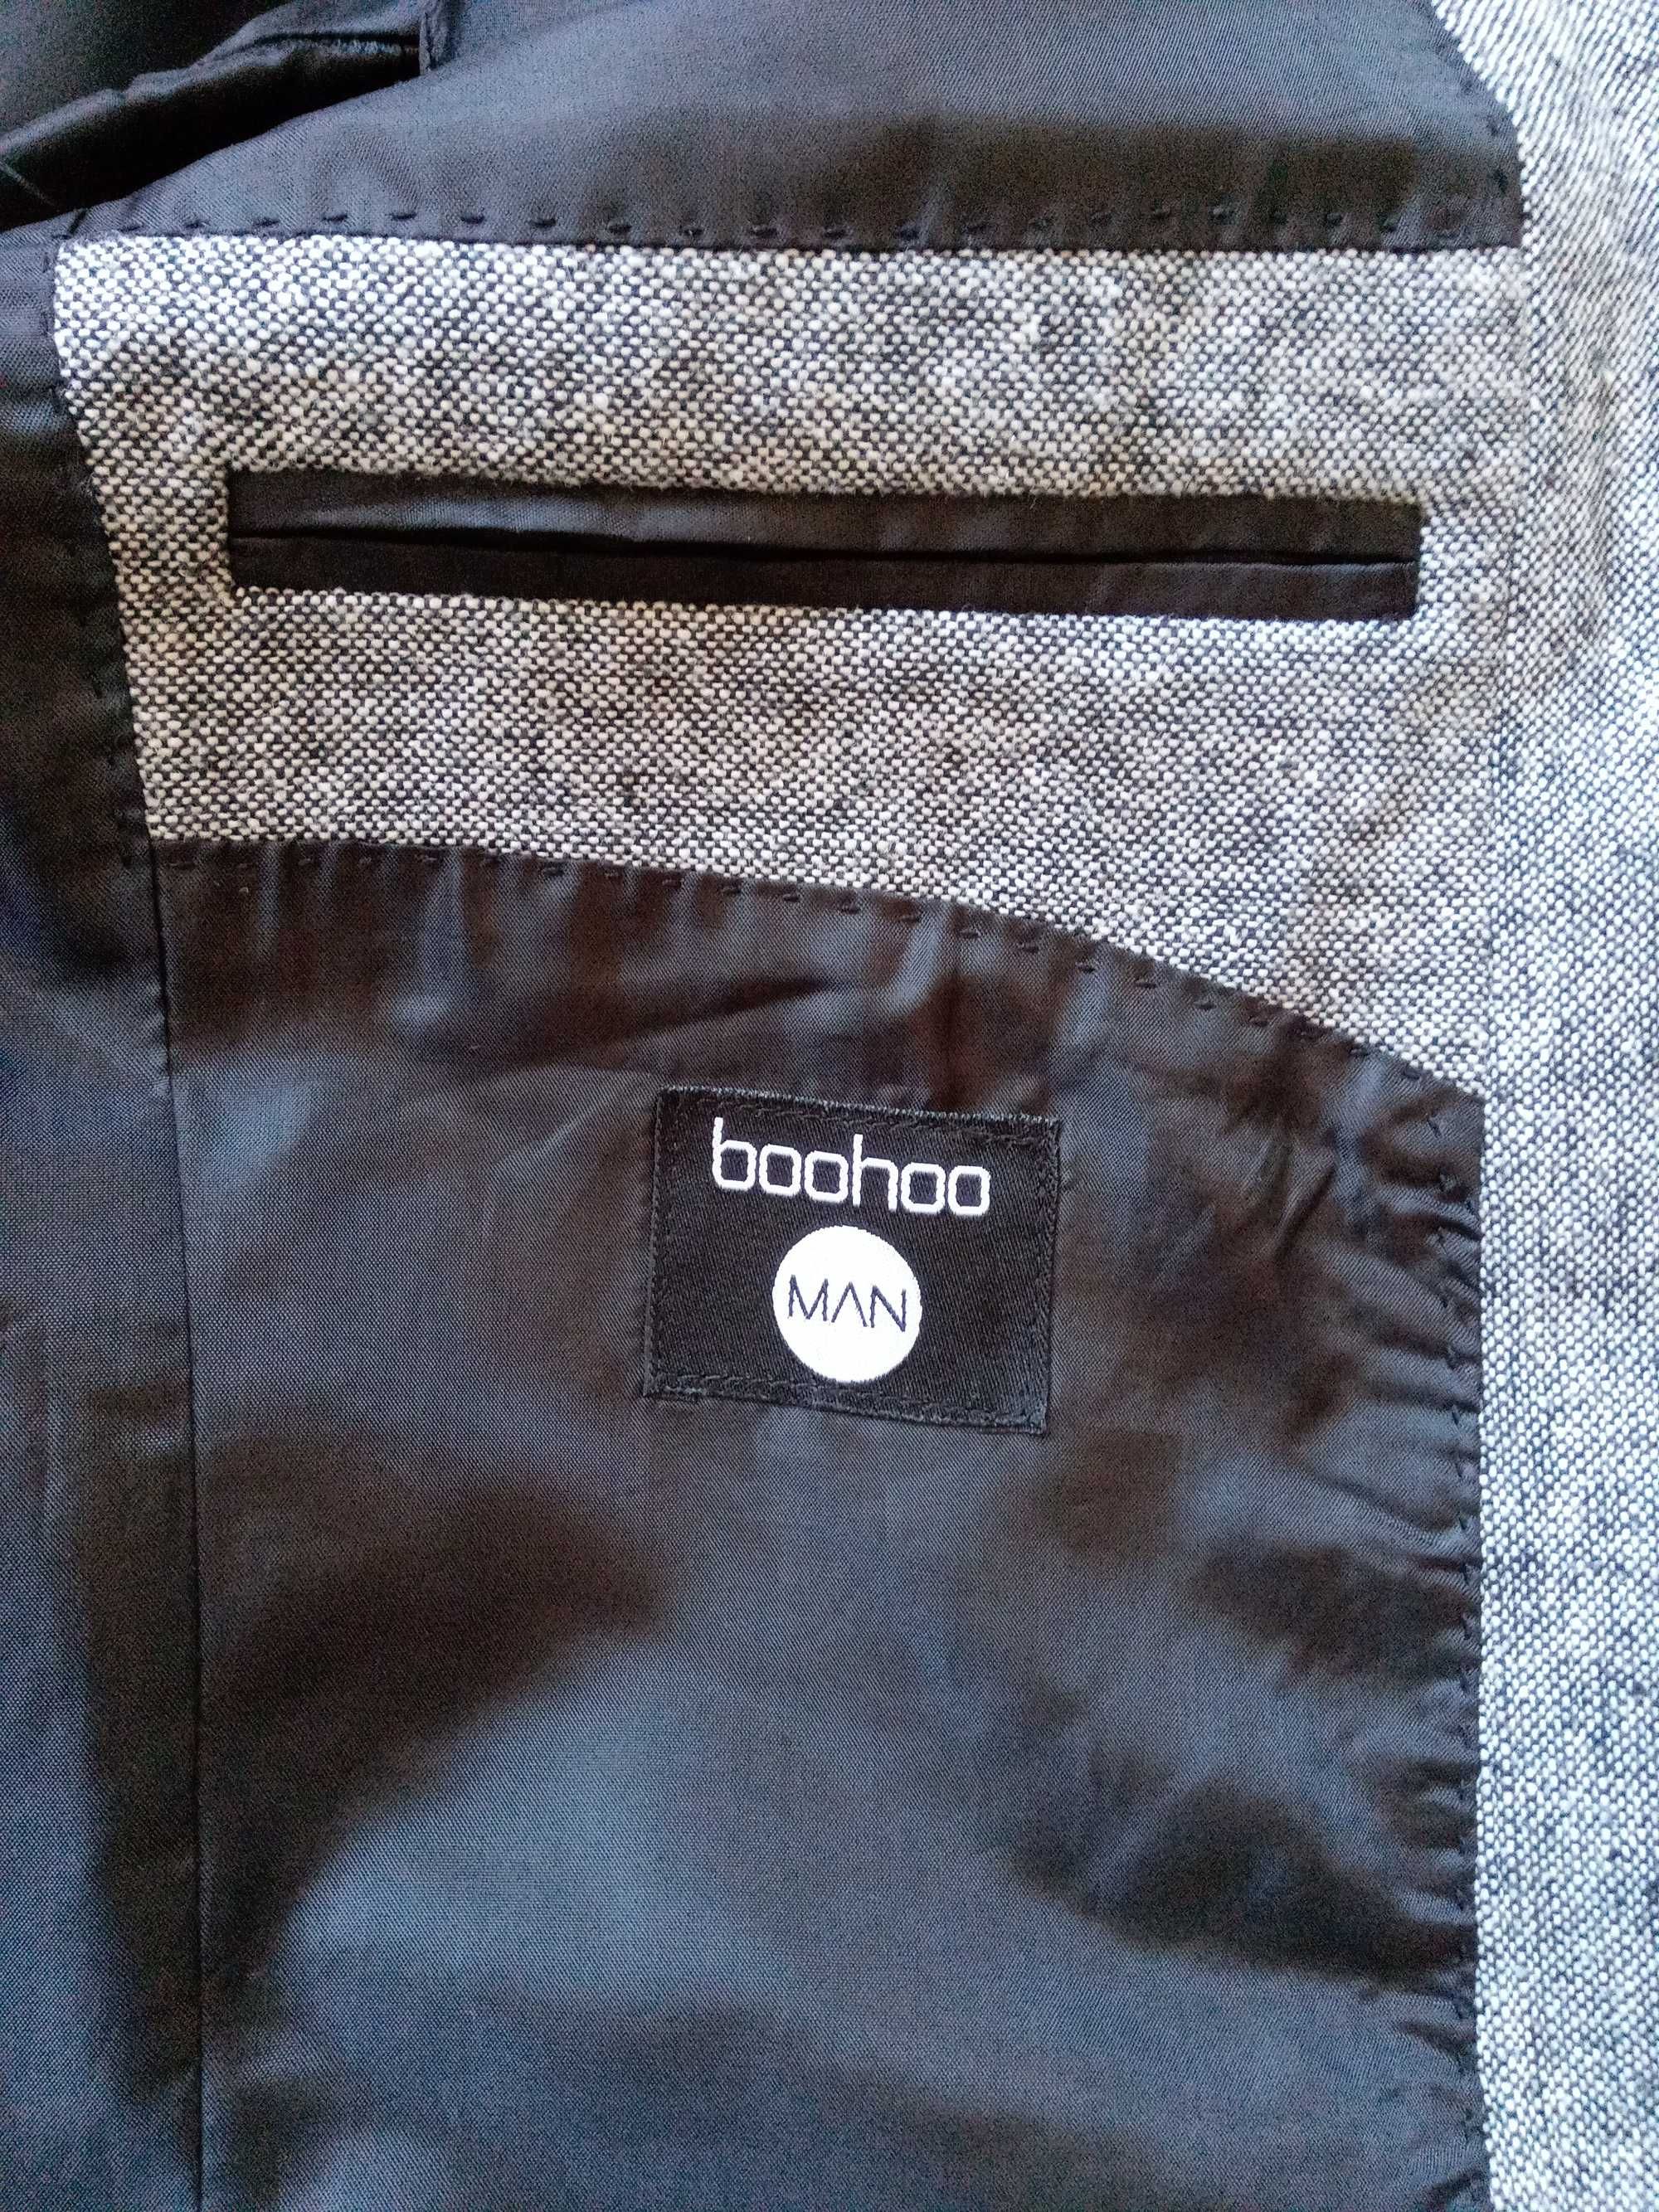 Пиджак, піджак, мужской, классический. Boohoo MAN. Р. L. 50.